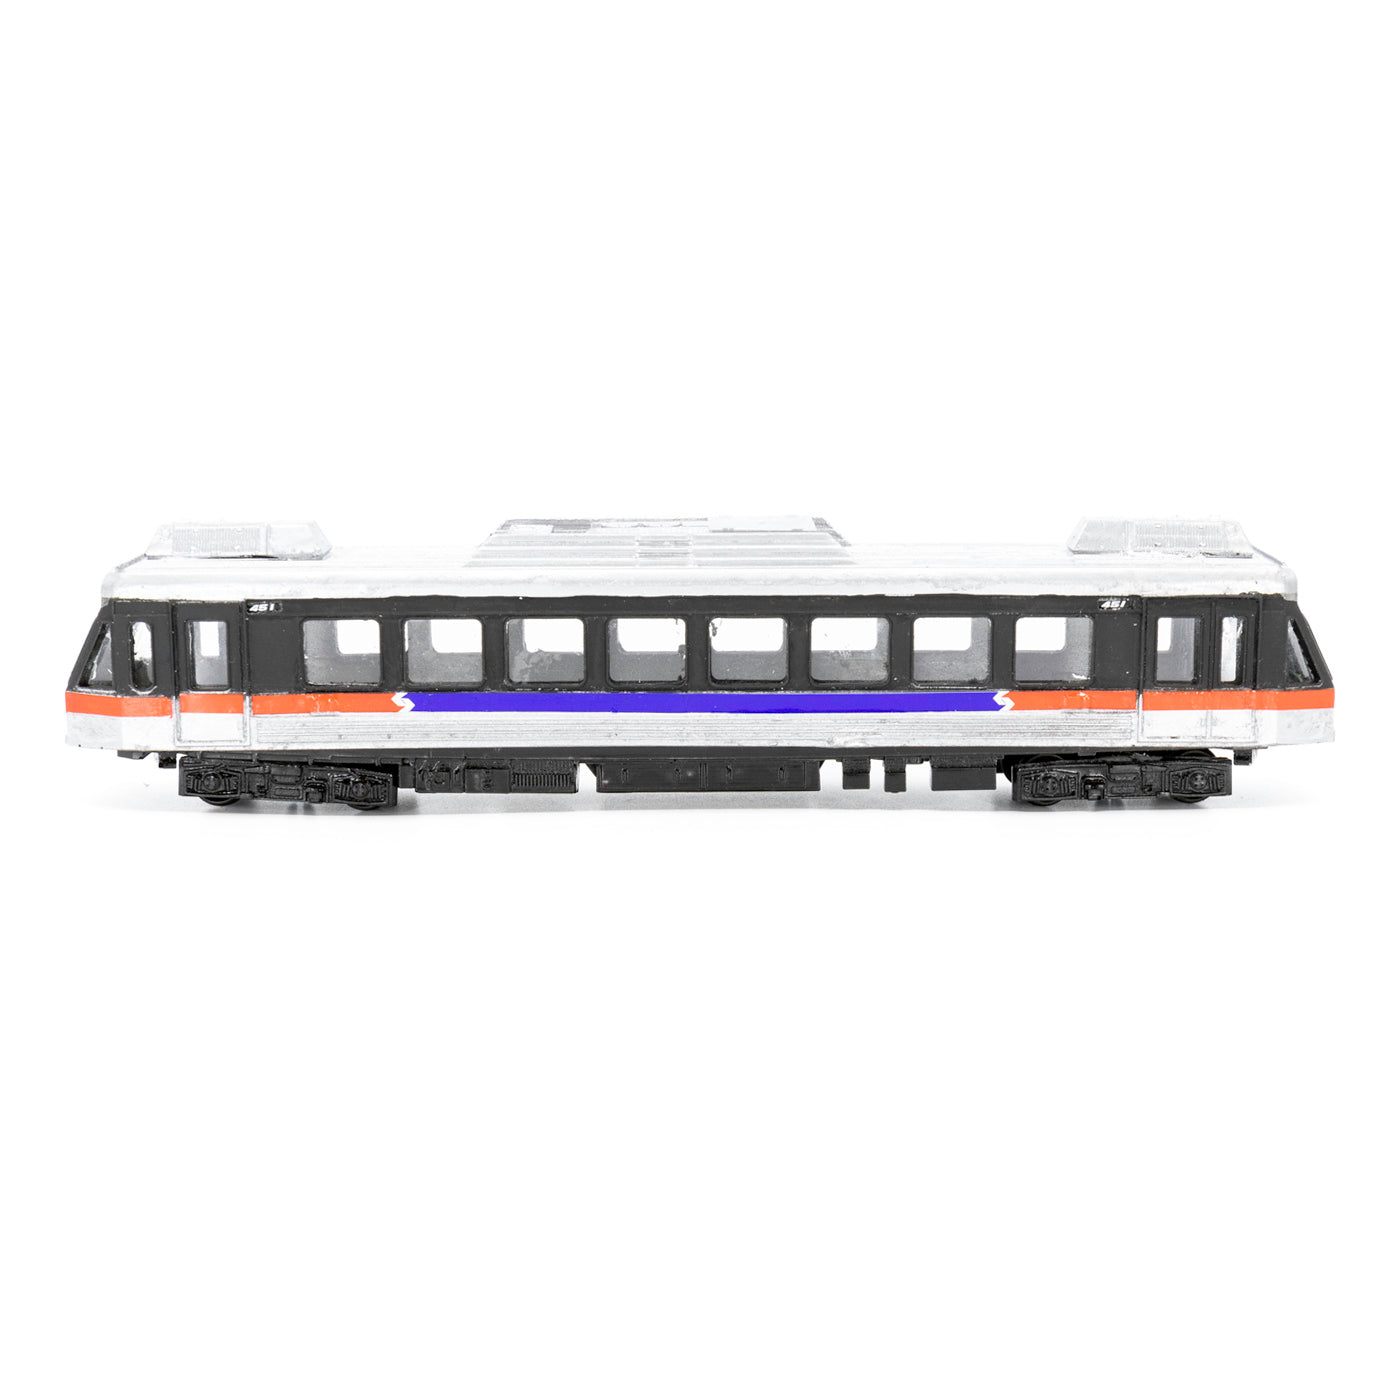 SEPTA Norristown High Speed Line N5 Handcrafted Display Model Train - Black